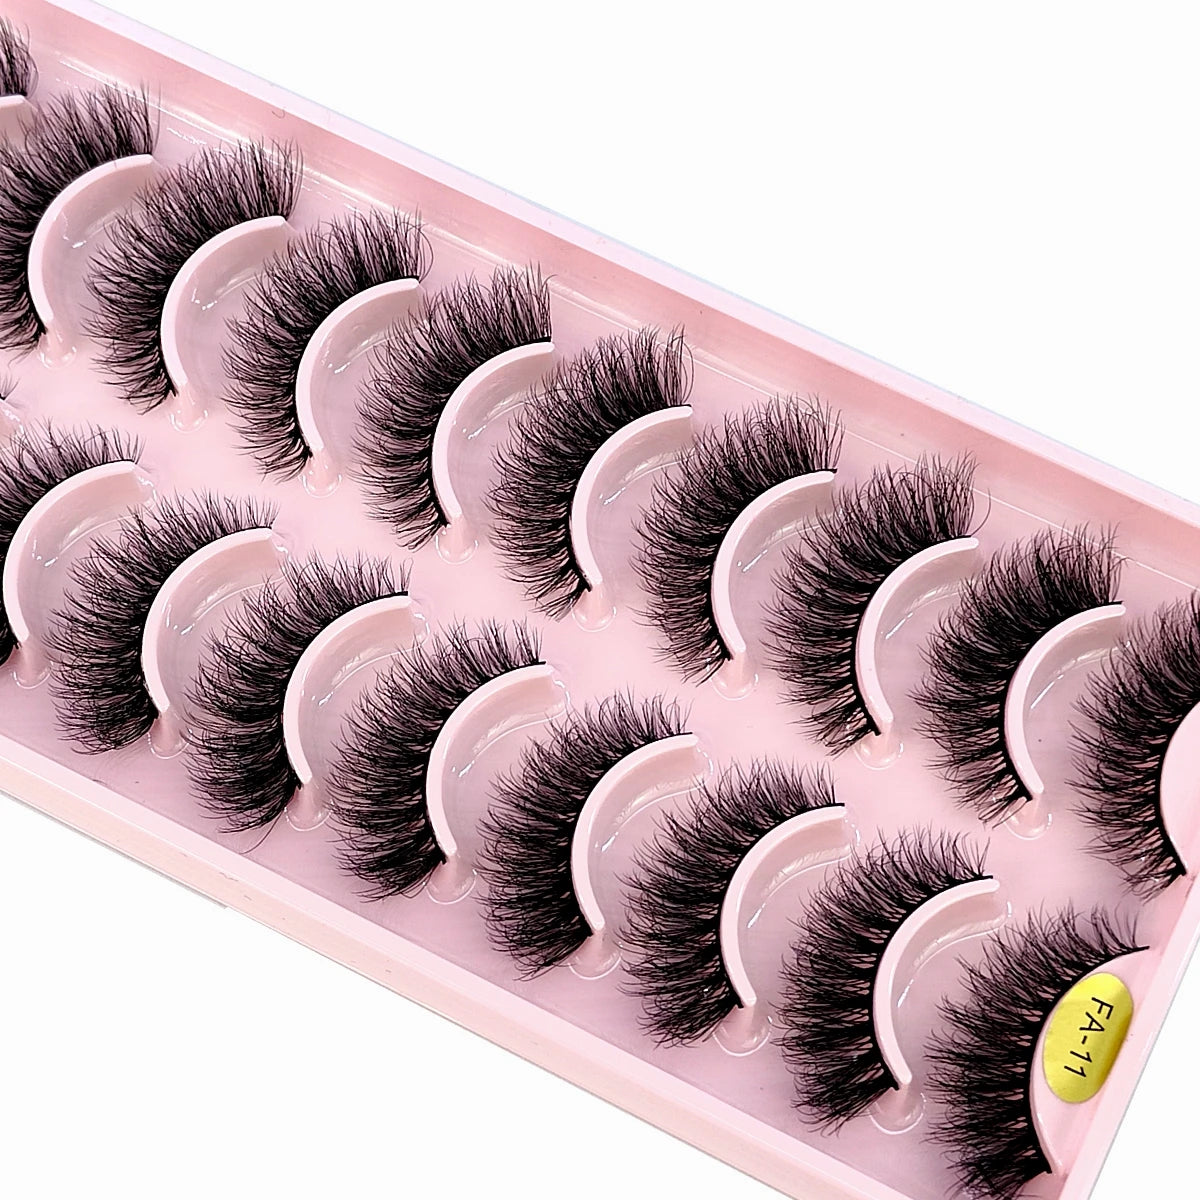 New 10 Pairs Natural False Eyelashes Fake Lashes Long Makeup 3D Mink Lashes Extension Eyelash Mink Eyelashes for Beauty